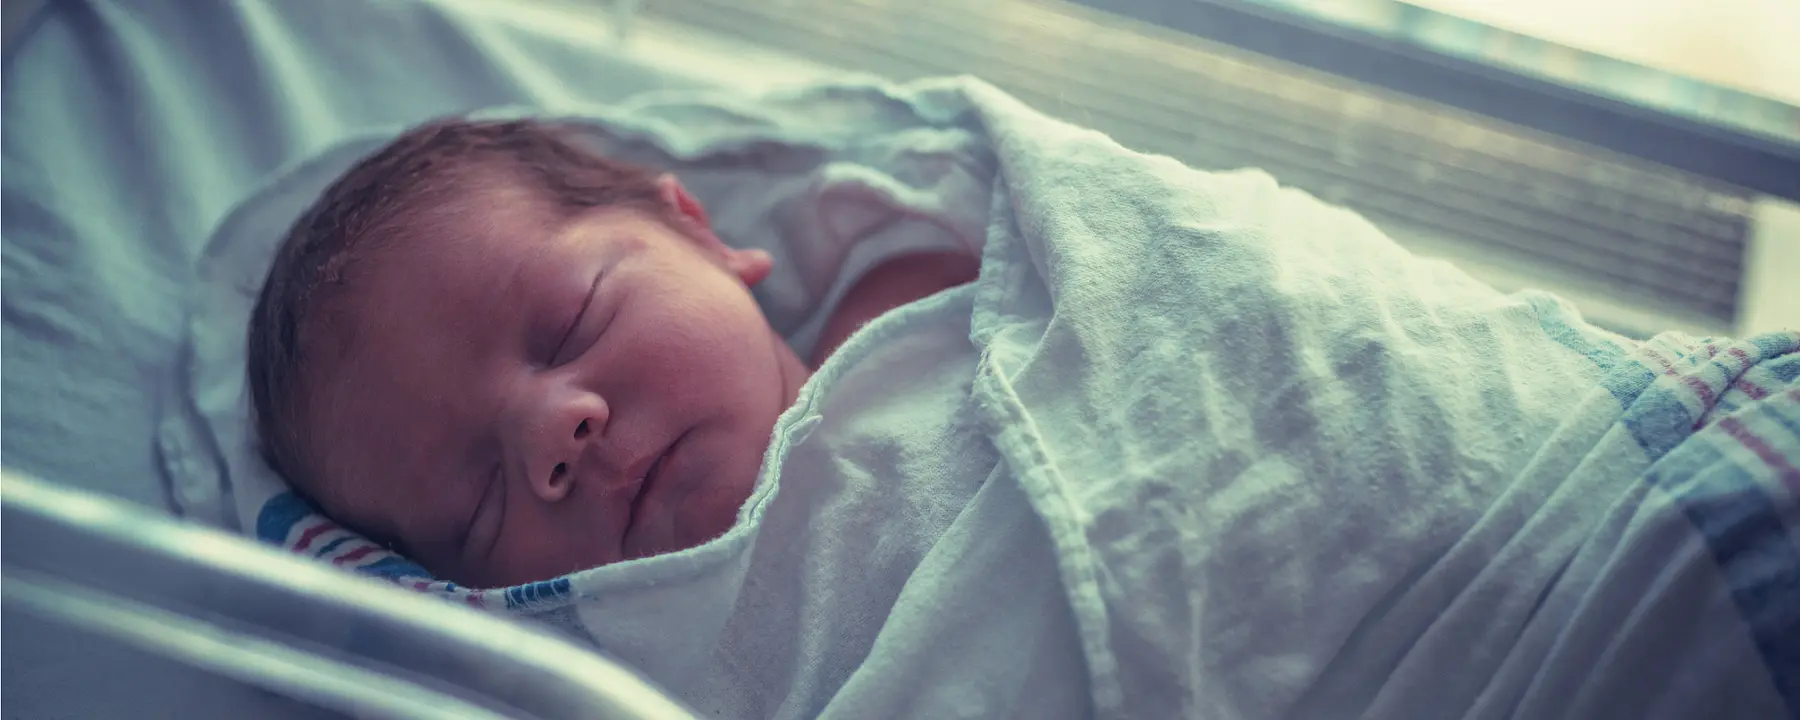 A newborn baby sleeps in a hospital crib